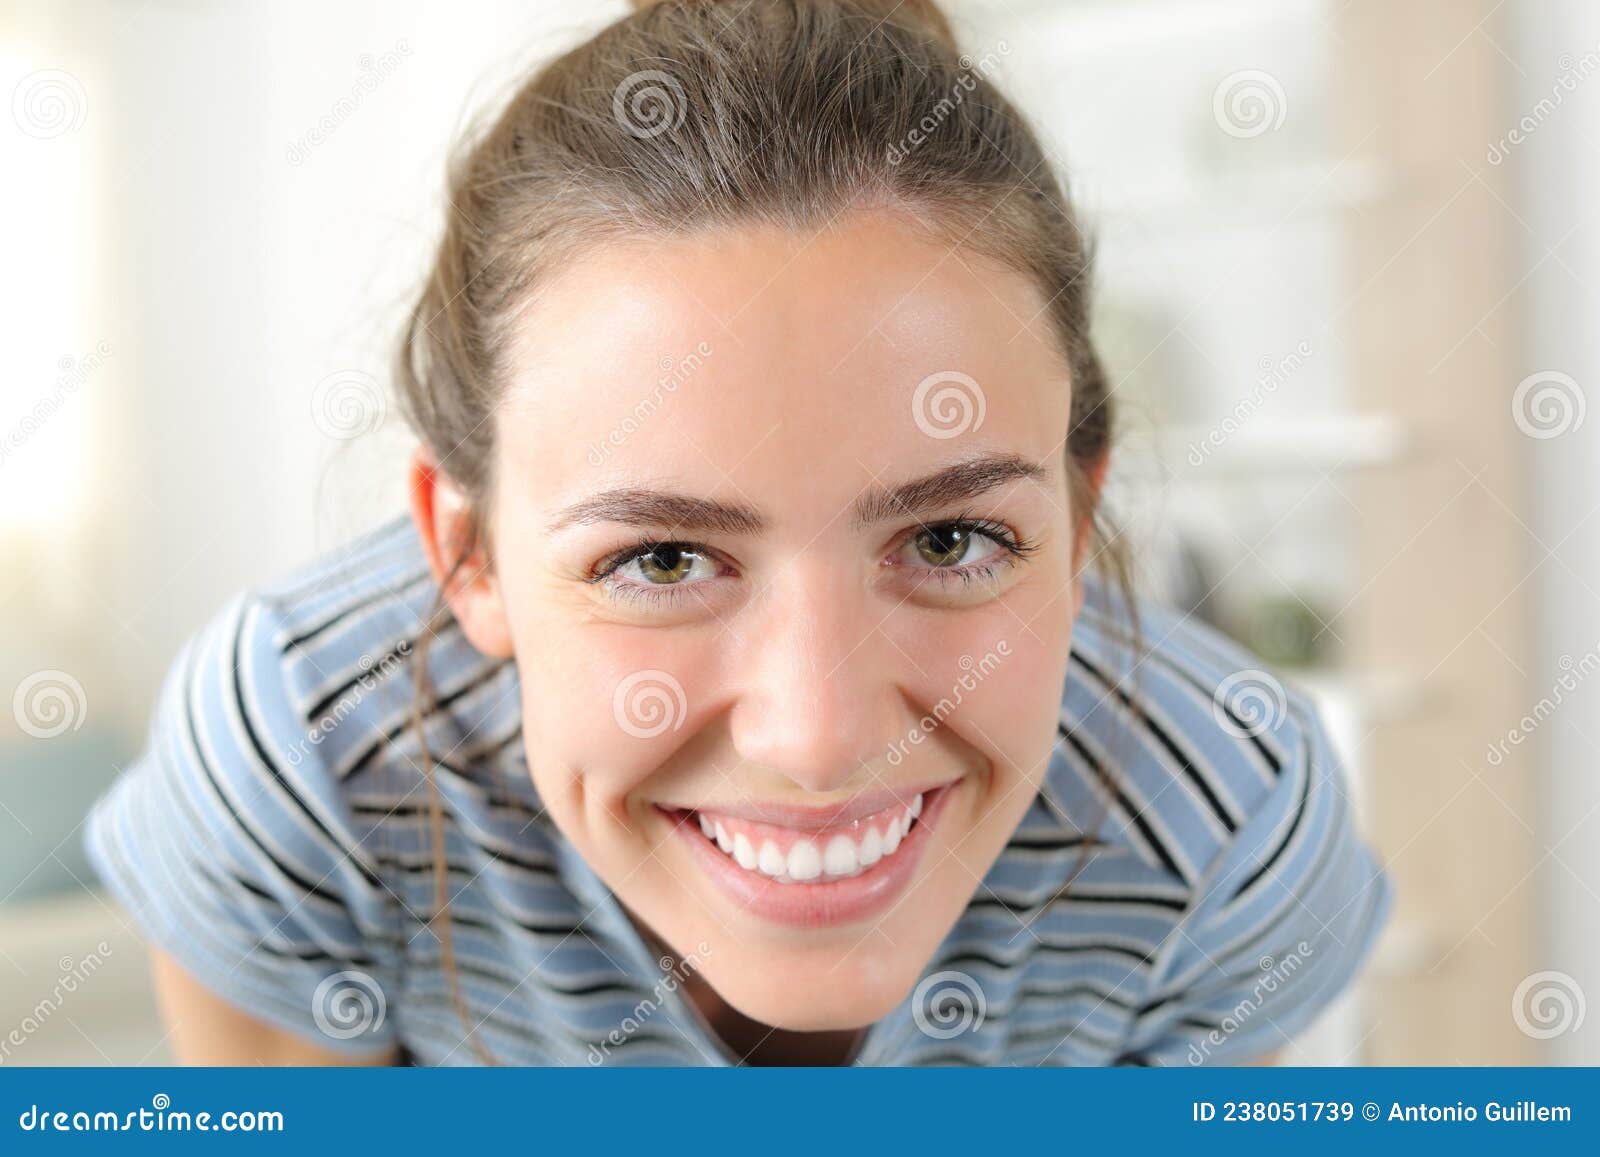 happy woman looking at camera joking at home